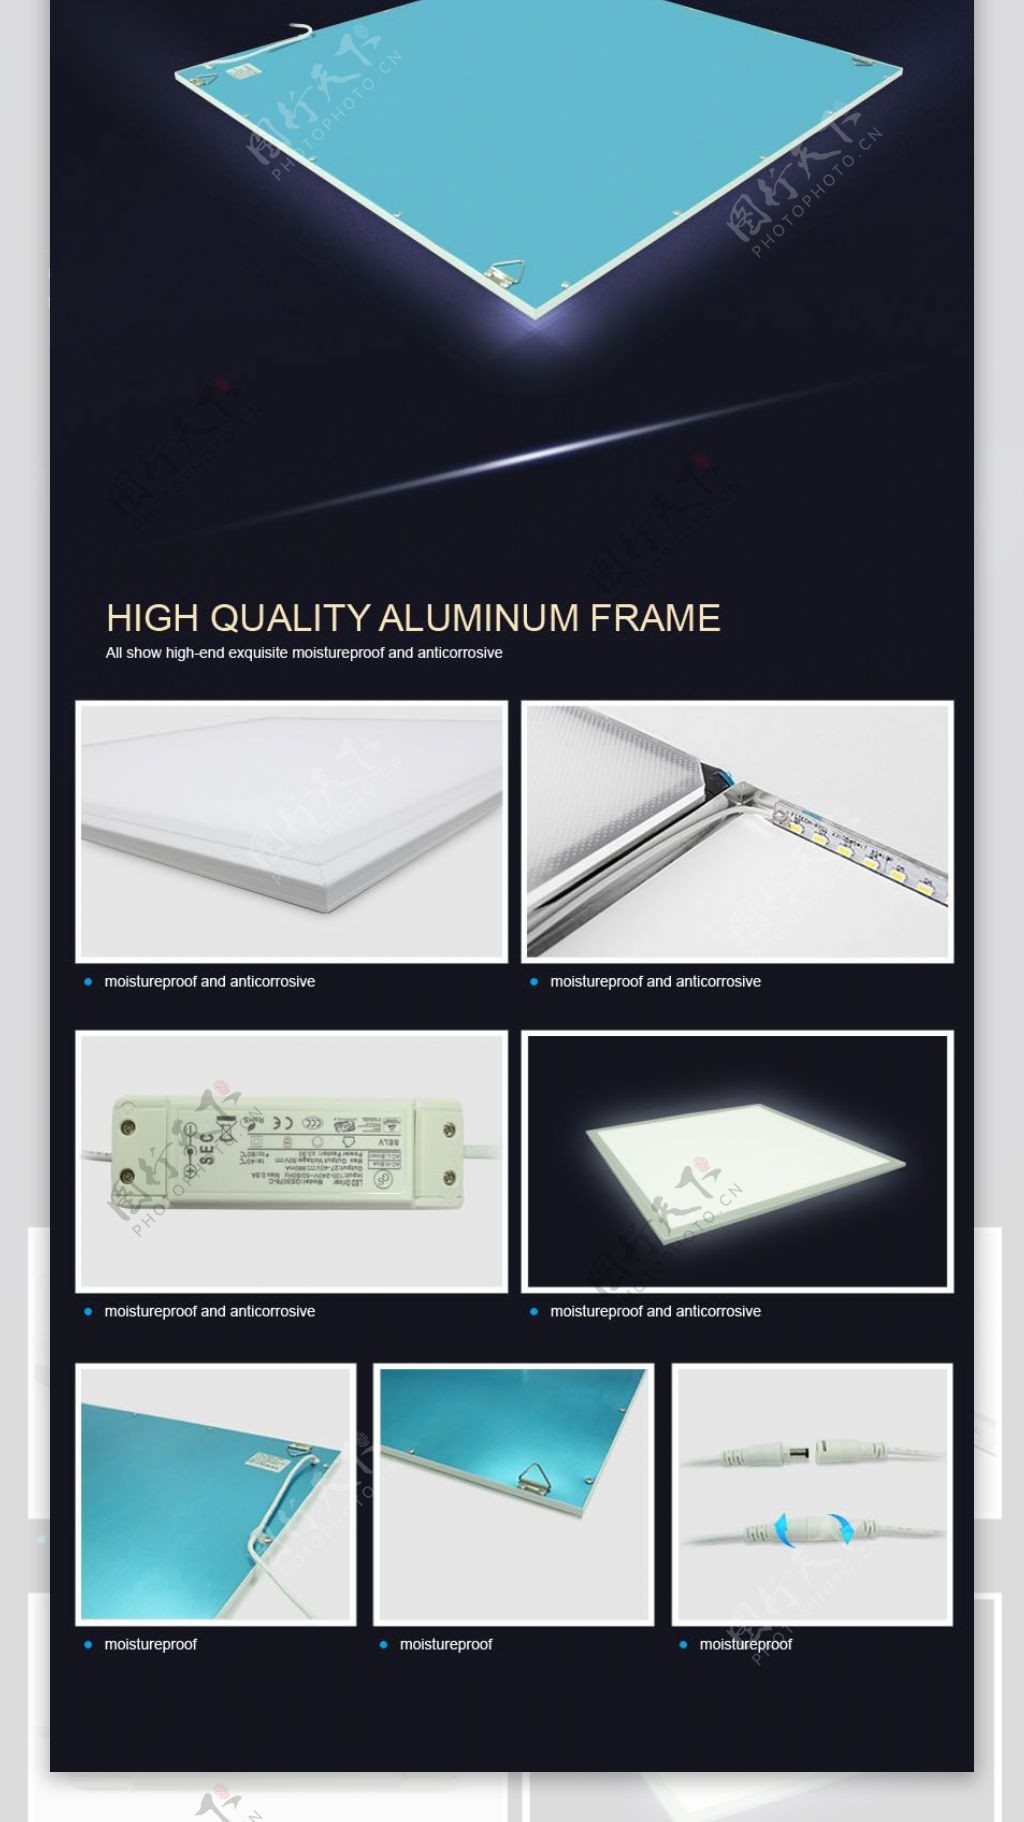 LED公司面板灯产品介绍页PSD源文件